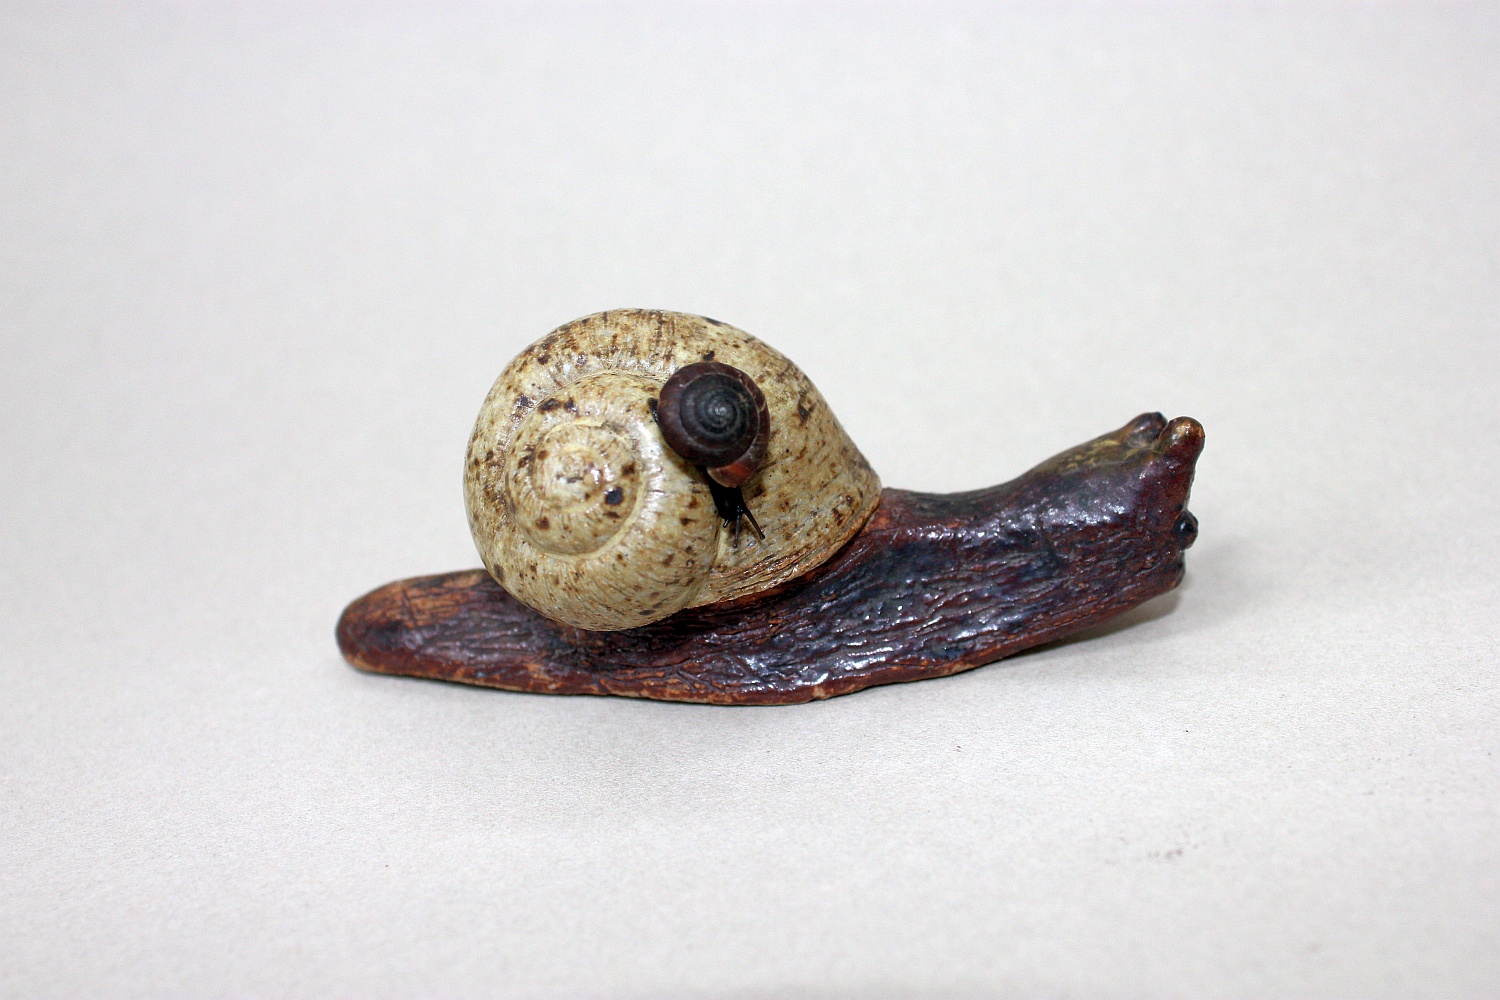 Snail on snail